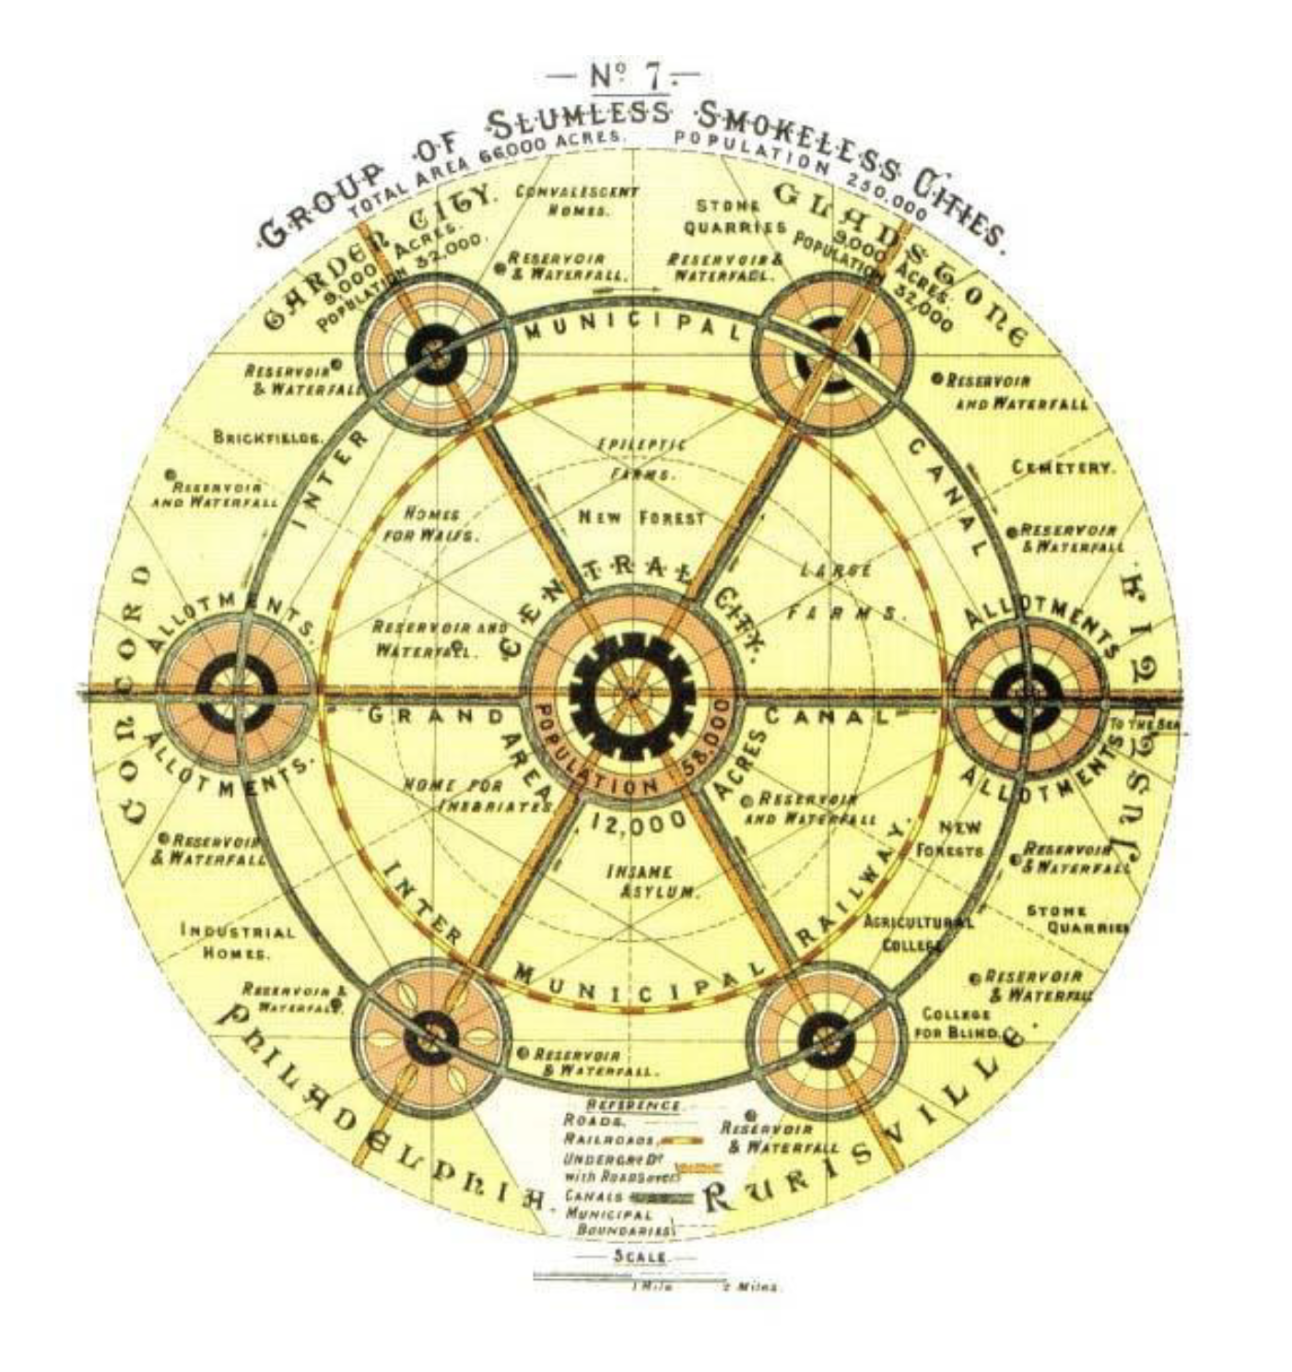 Een diagram dat het concept 'Garden Cities of Tomorrow' van Ebenezer Howard uit 1902 afbeeldt.